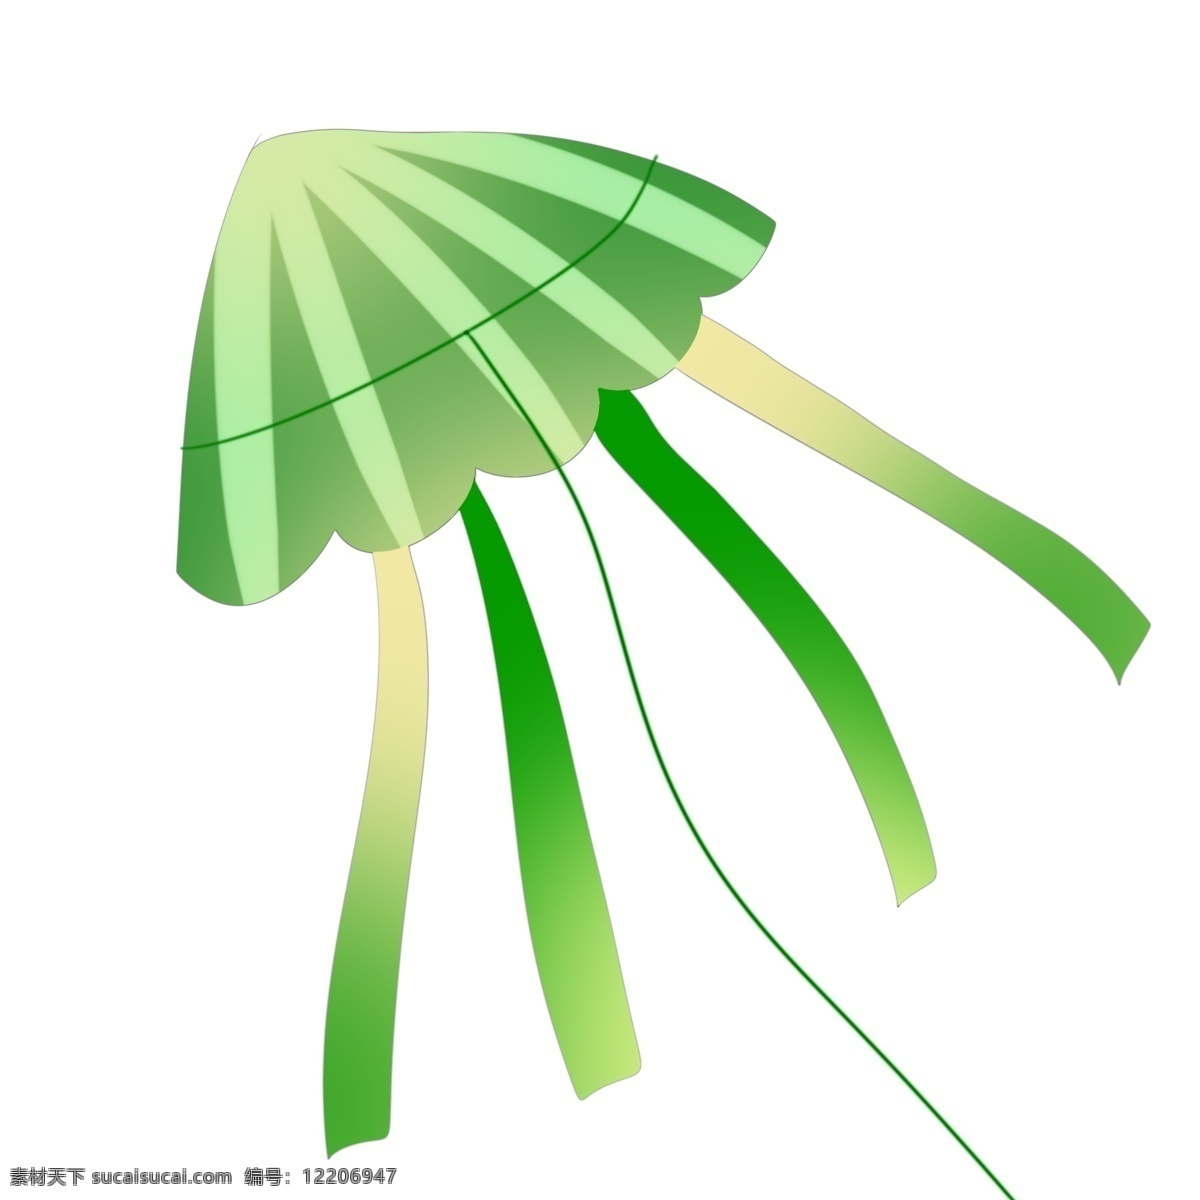 放飞 风筝 绿色 绿色风筝 体格风筝 长长的尾巴 放飞的风筝 绿色风筝插画 绿风筝插画